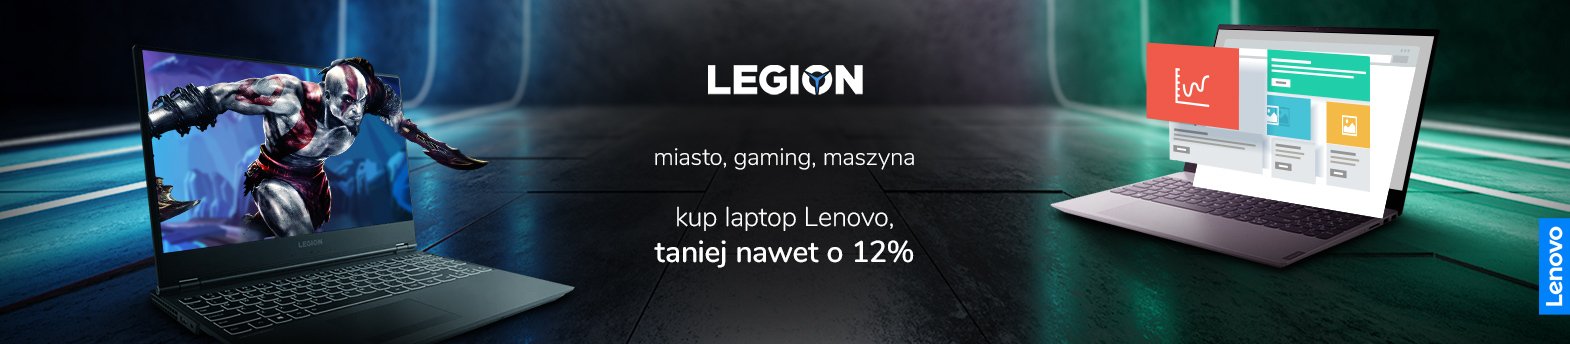 promocja x-kom Lenovo